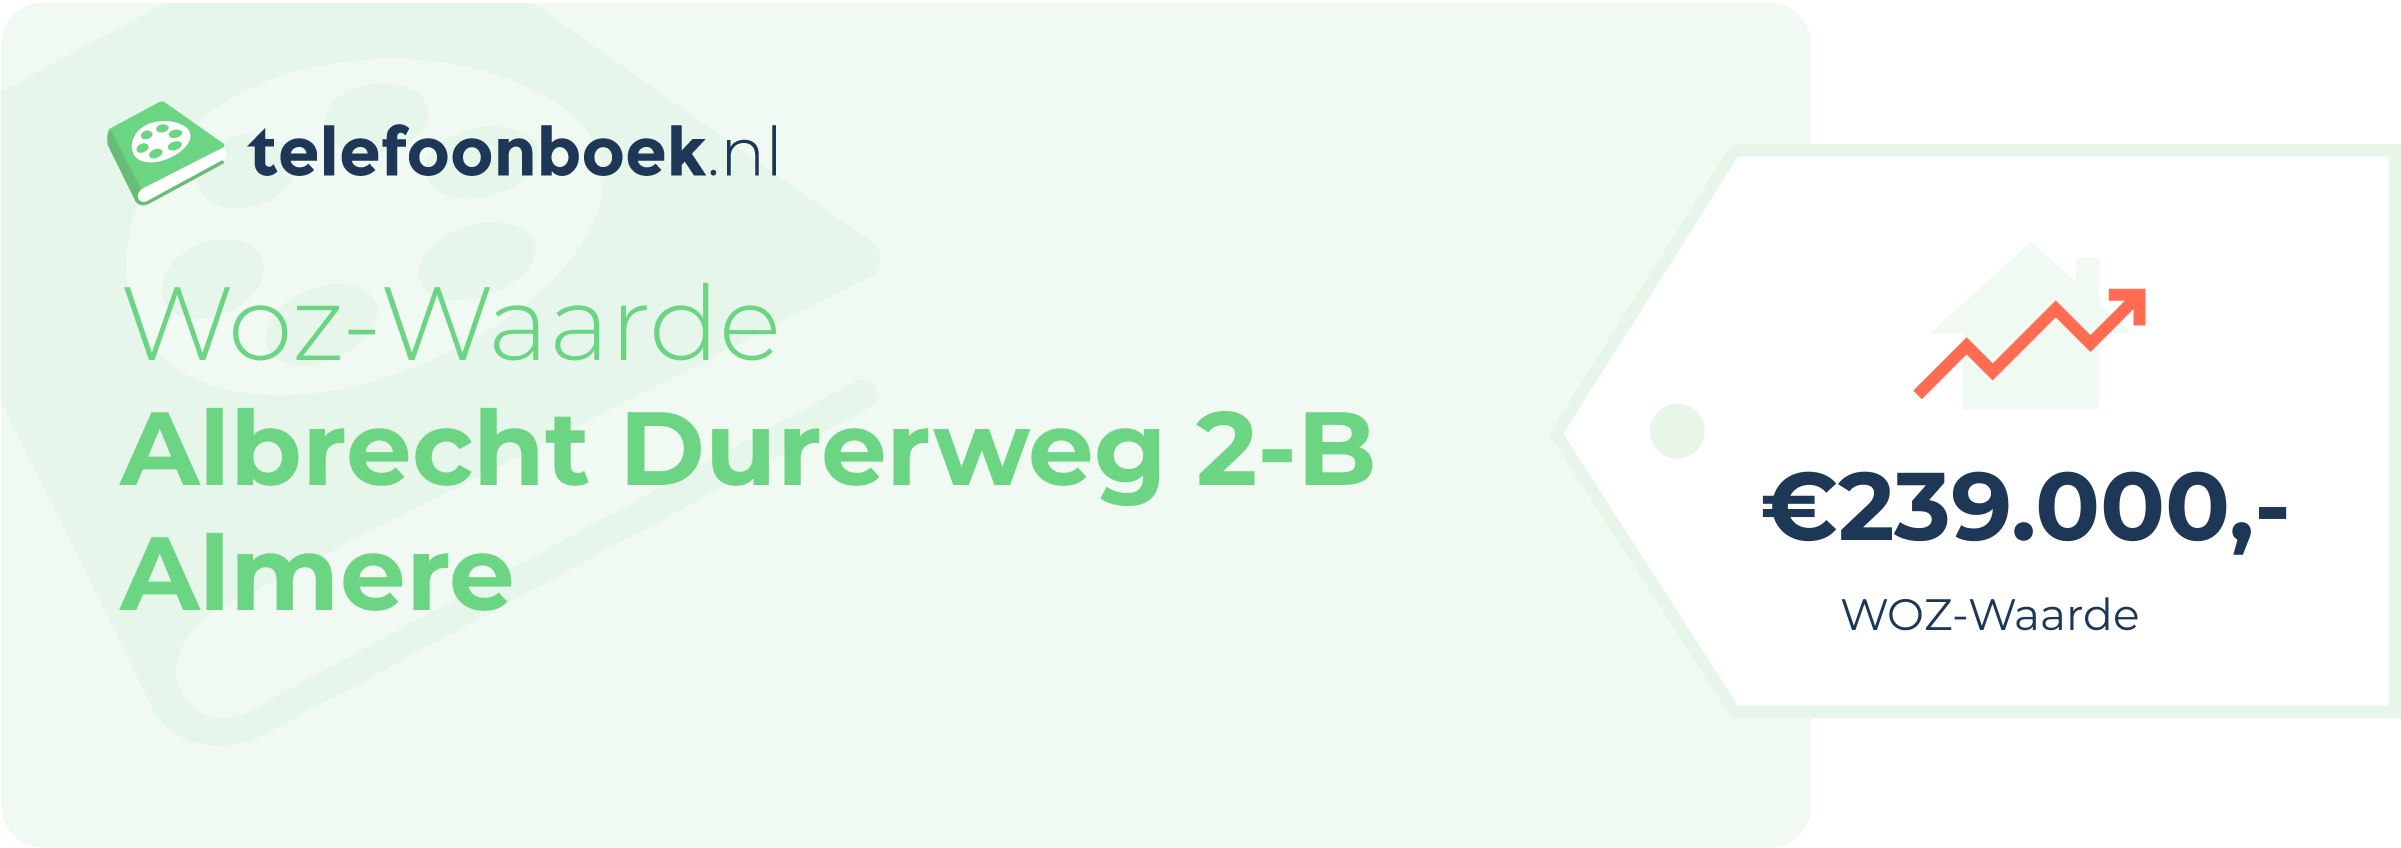 WOZ-waarde Albrecht Durerweg 2-B Almere